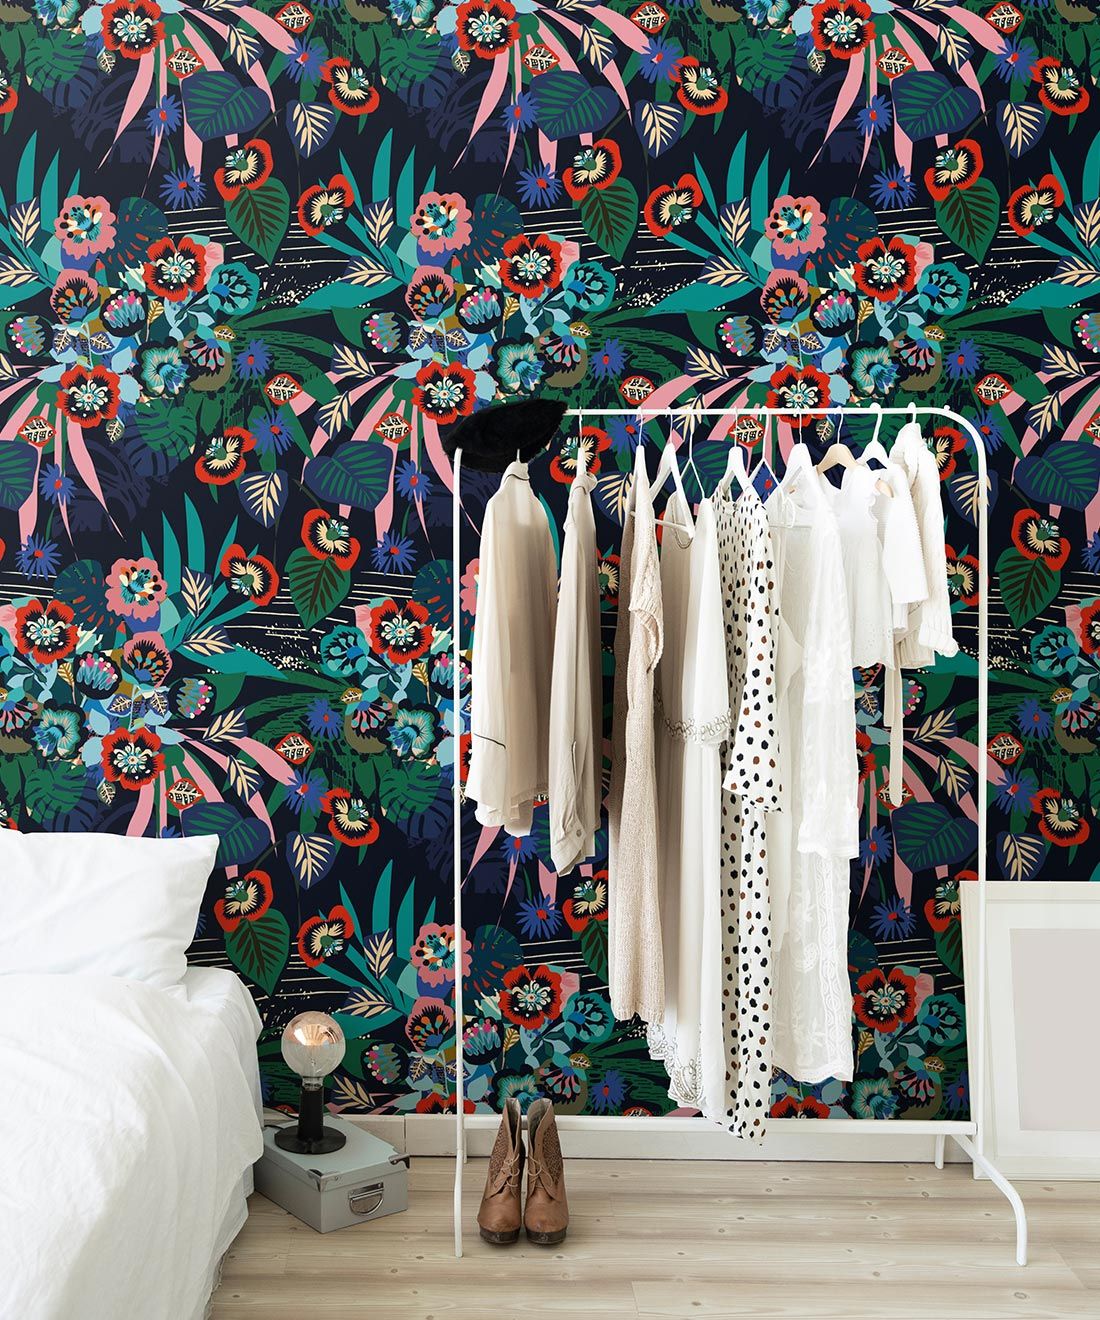 aper • Kimono Wallpaper • Japanese Wallpaper • Deep Colorful Wallpaper • Insitu